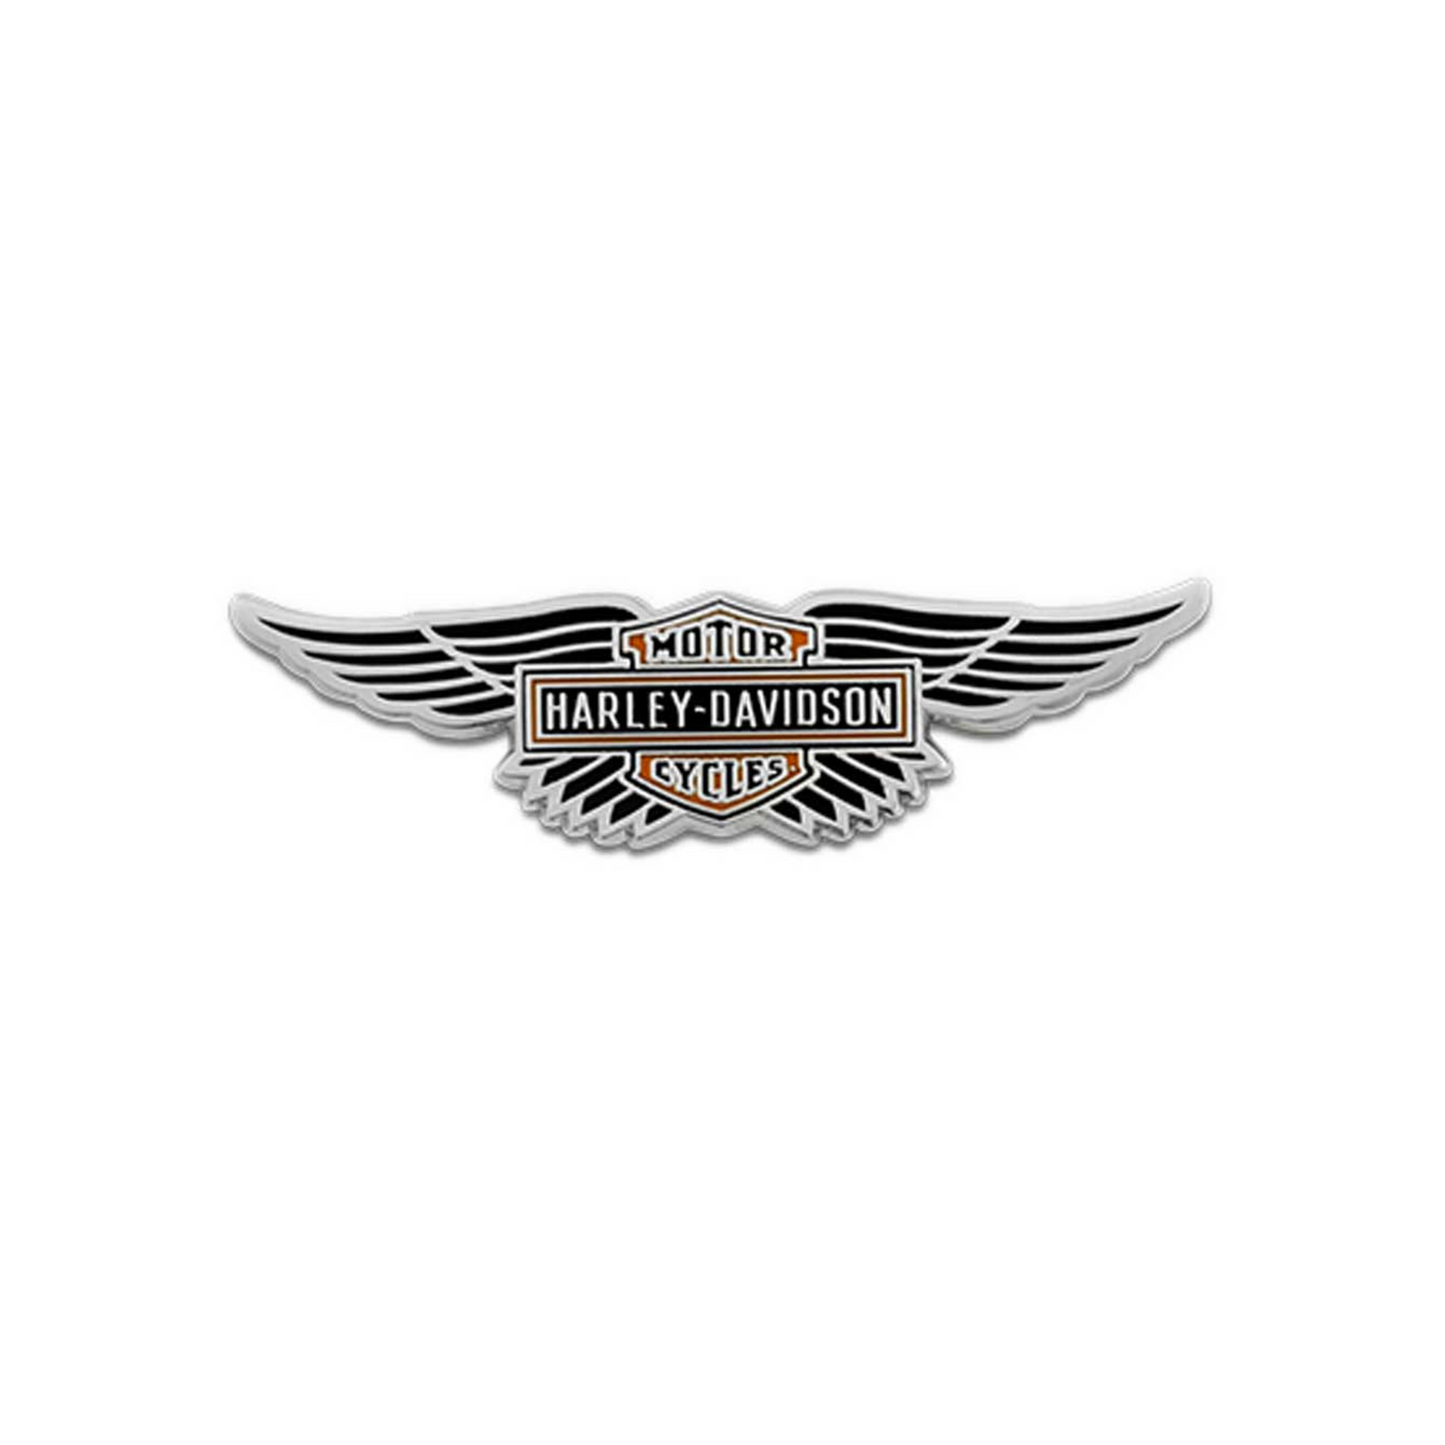 Harley-Davidson® 1.75 inch Winged Bar & Shield Logo Pin - Shiny Finish